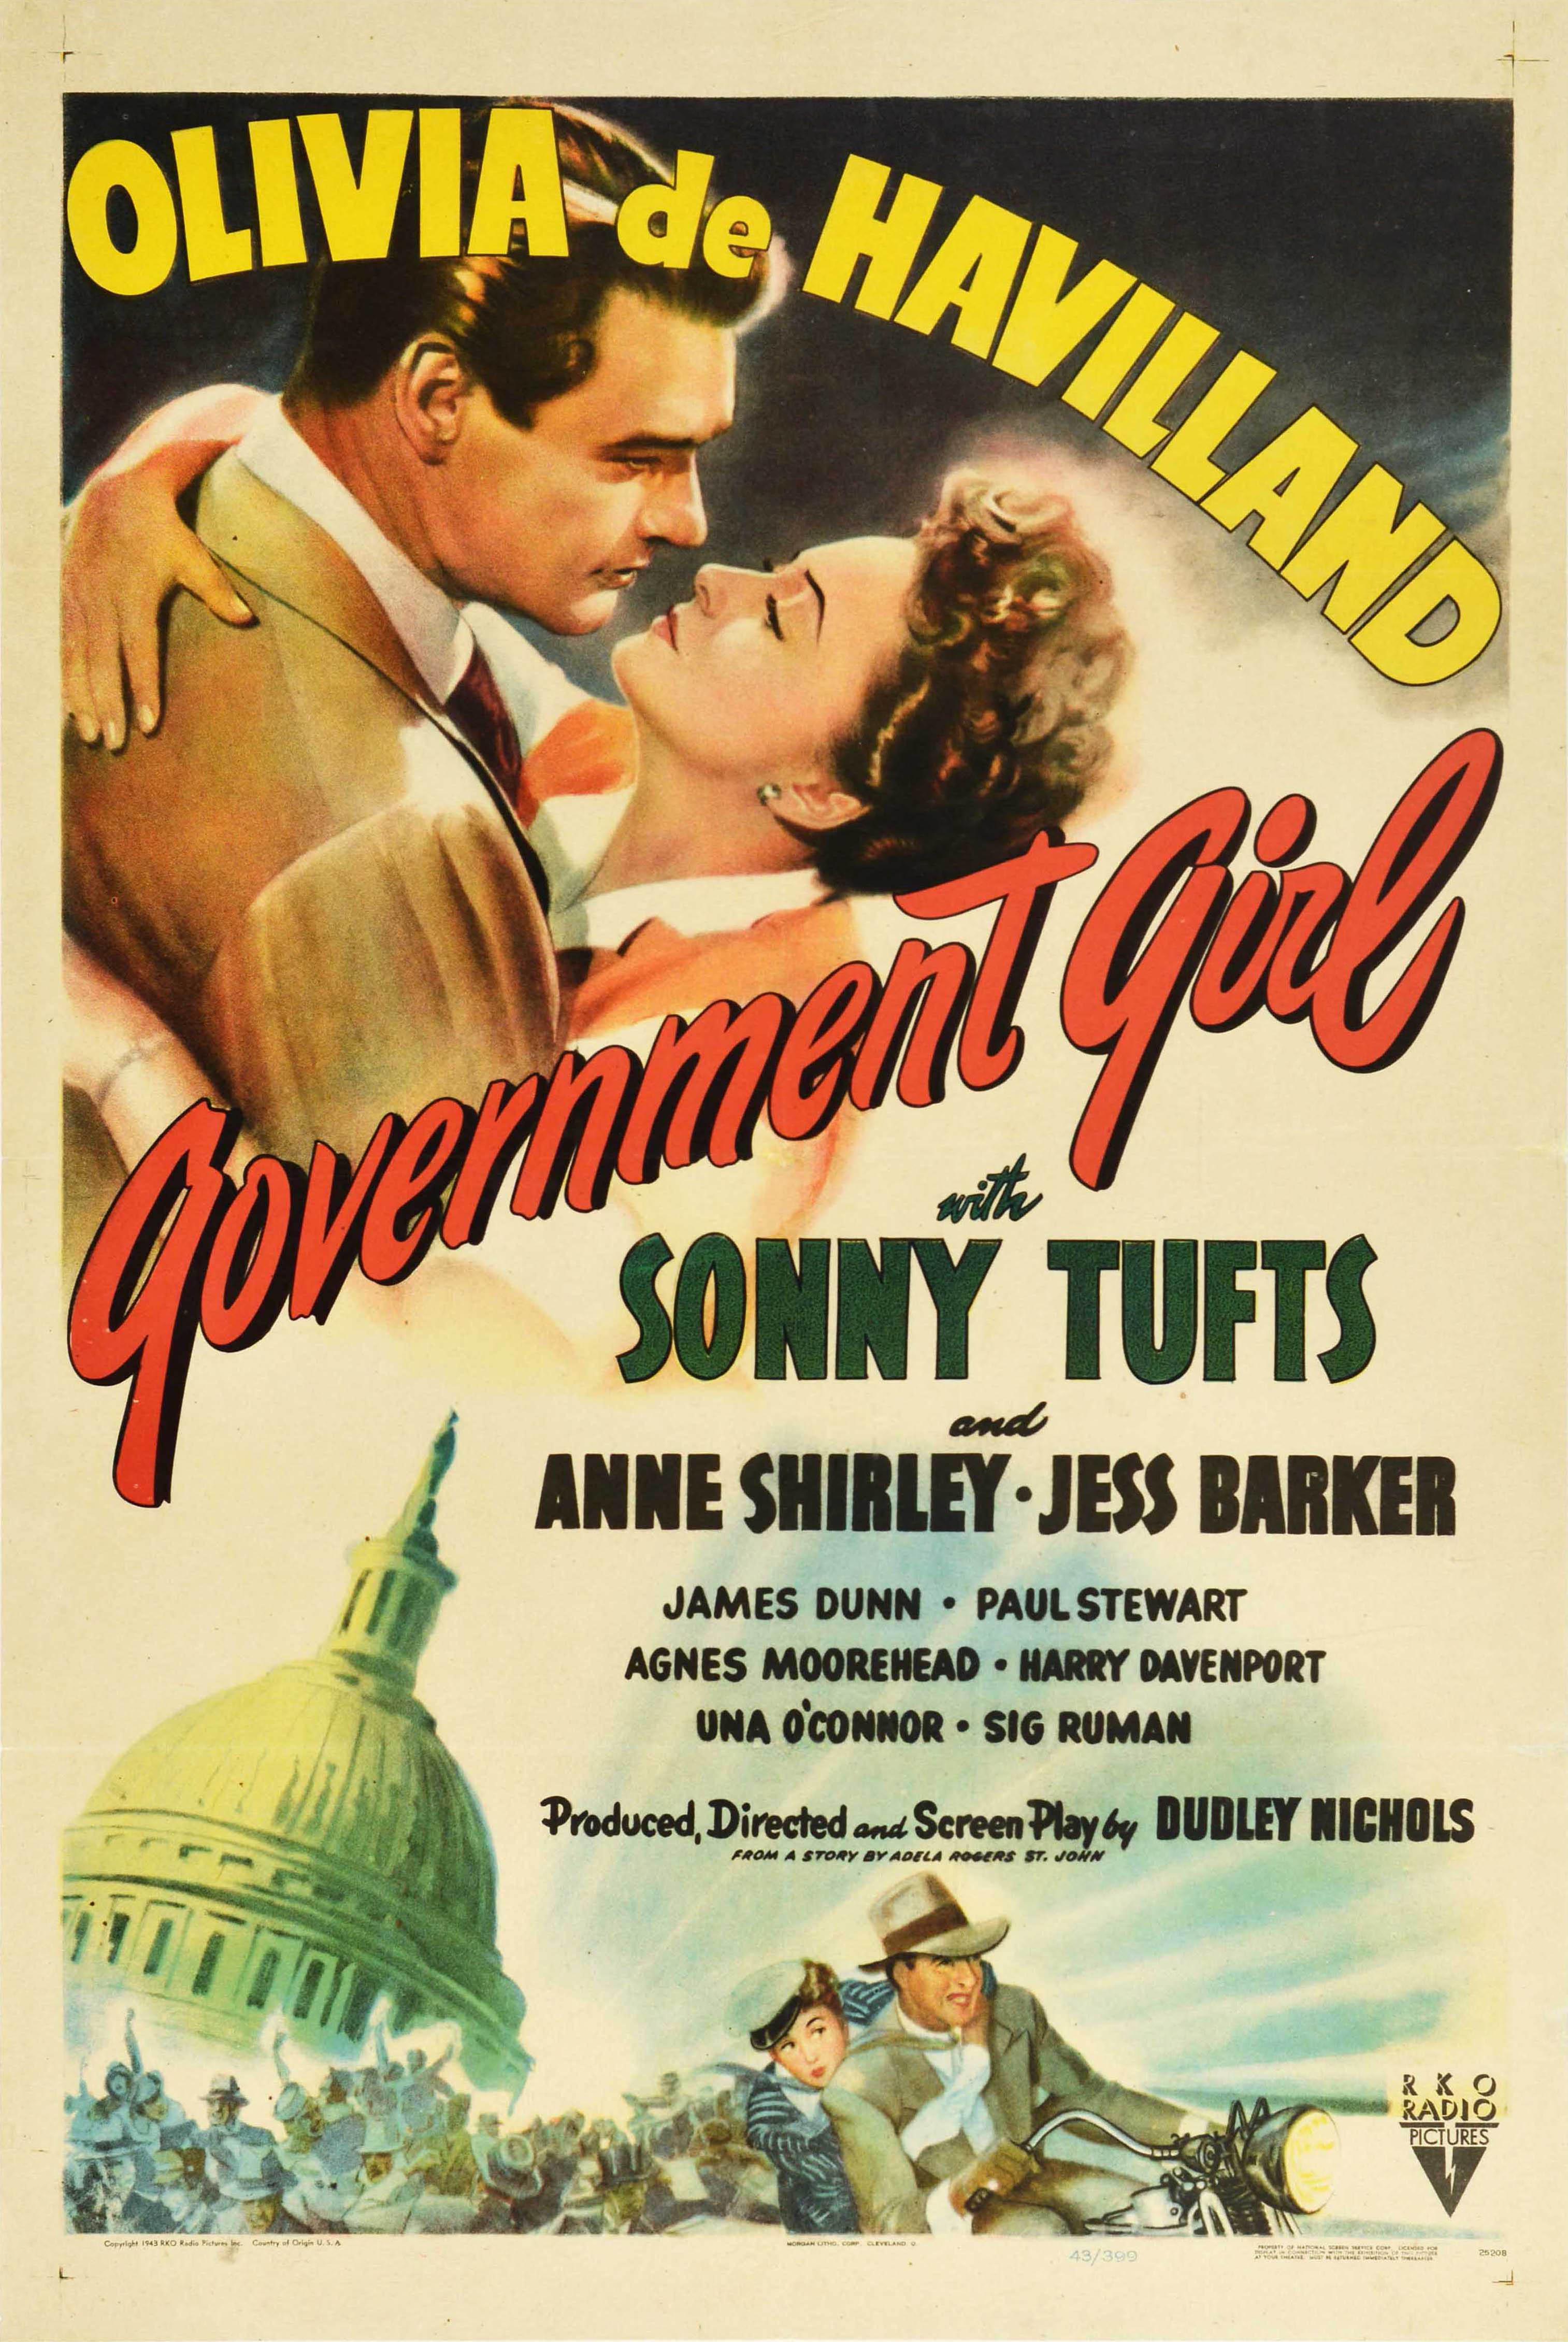 Unknown Print - Original Vintage Film Poster For Government Girl Olivia De Havilland Sonny Tufts